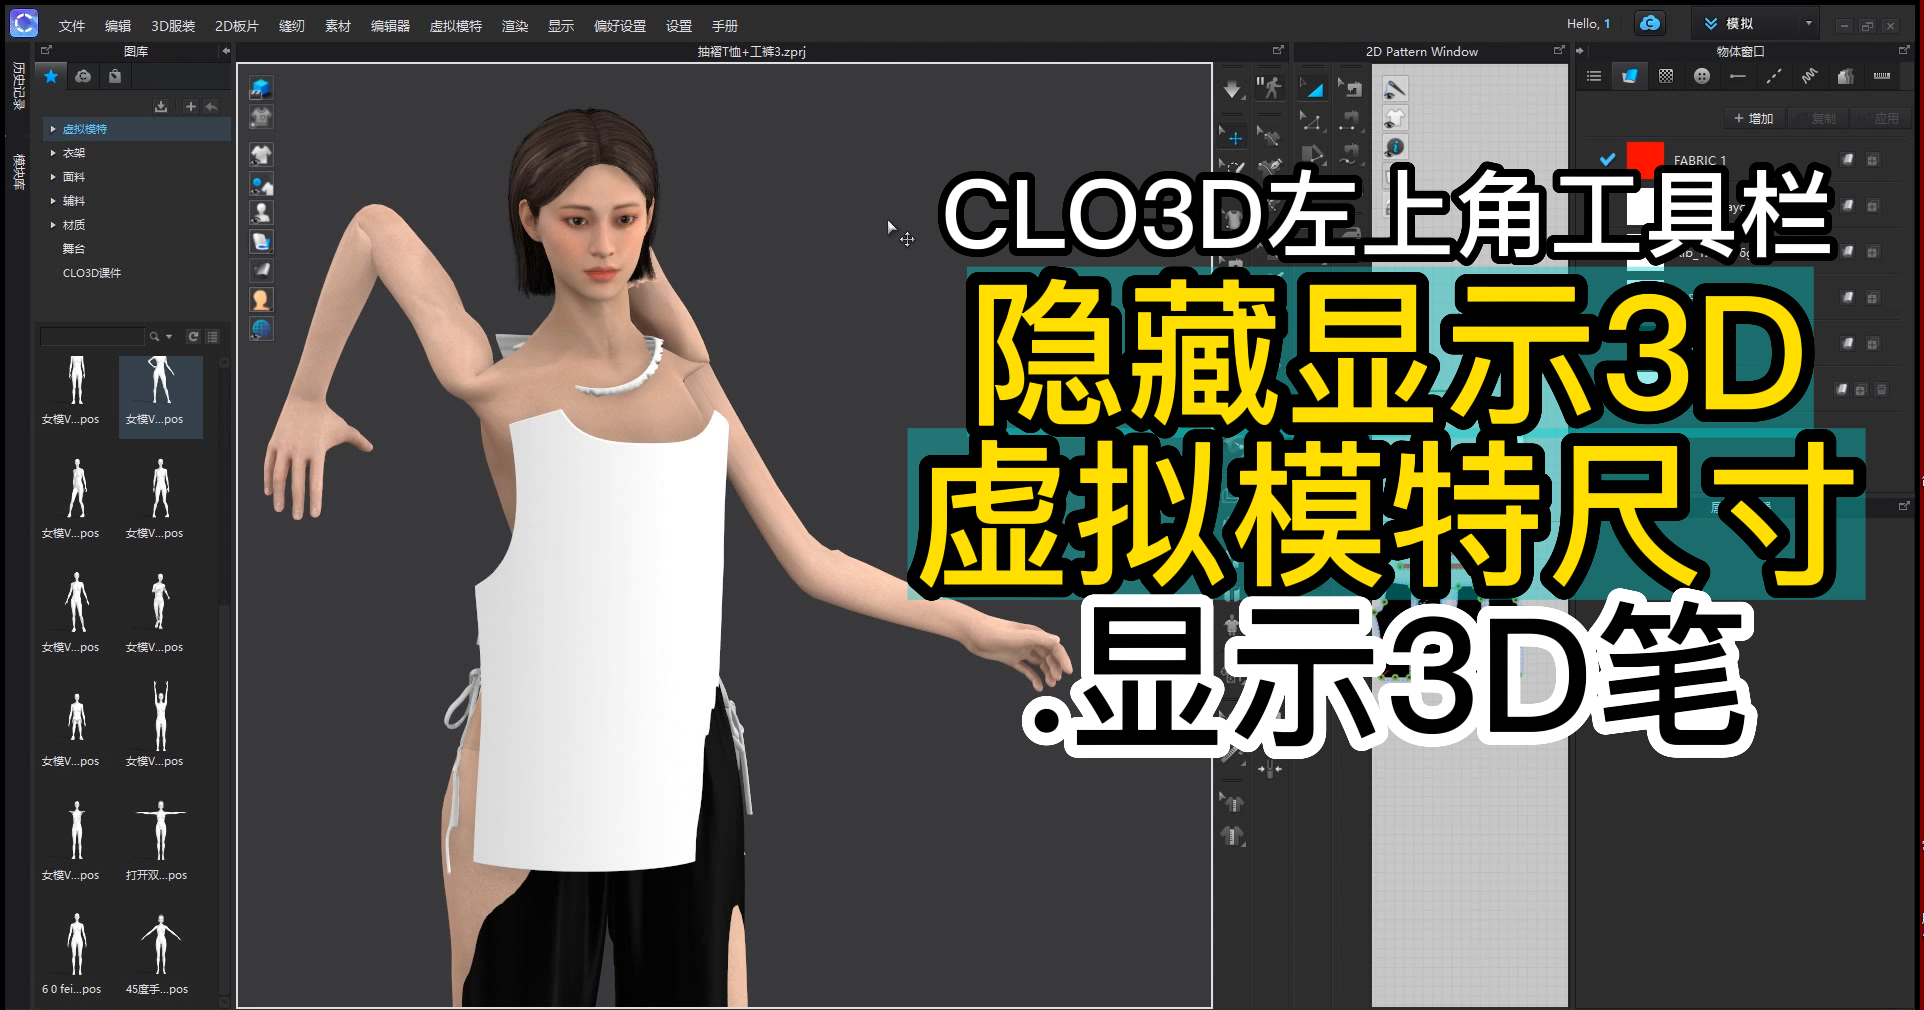 31CLO3D左上角工具栏-隐藏显示3D虚拟模特尺寸.显示3D笔.png